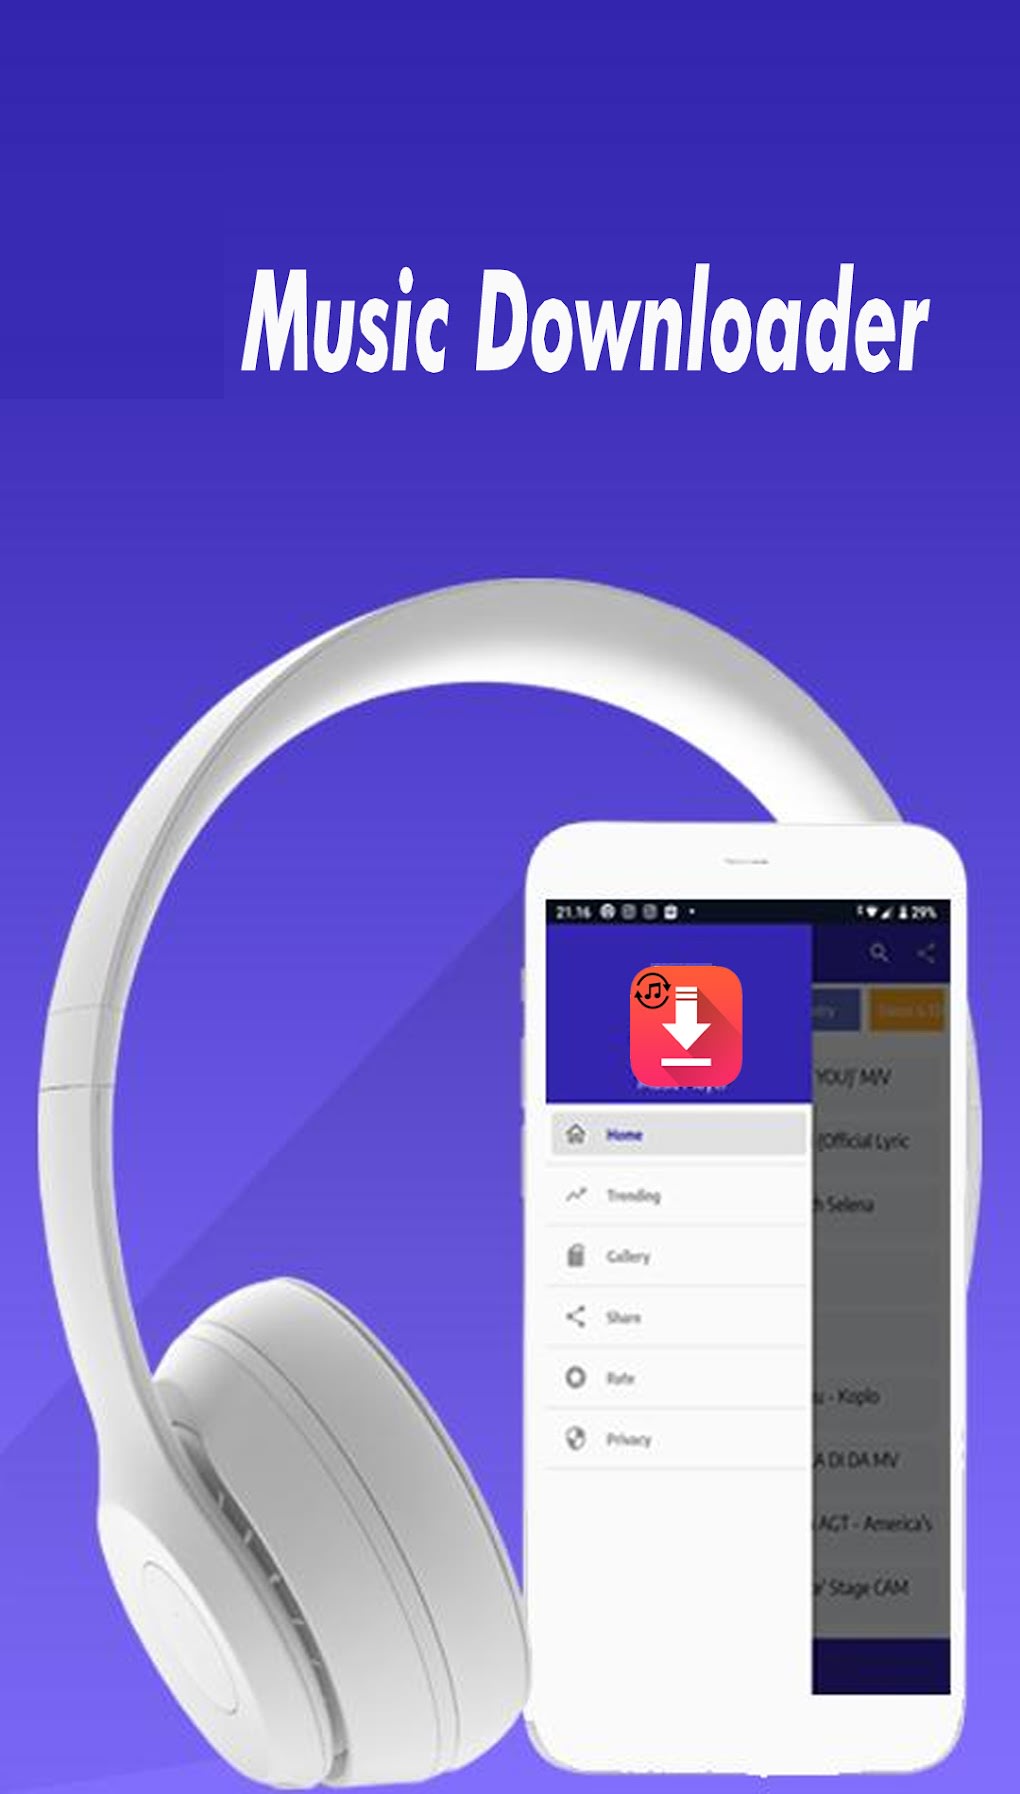 Gaseoso malo favorito Y2Mate Mp3 Music Downloads APK para Android - Descargar